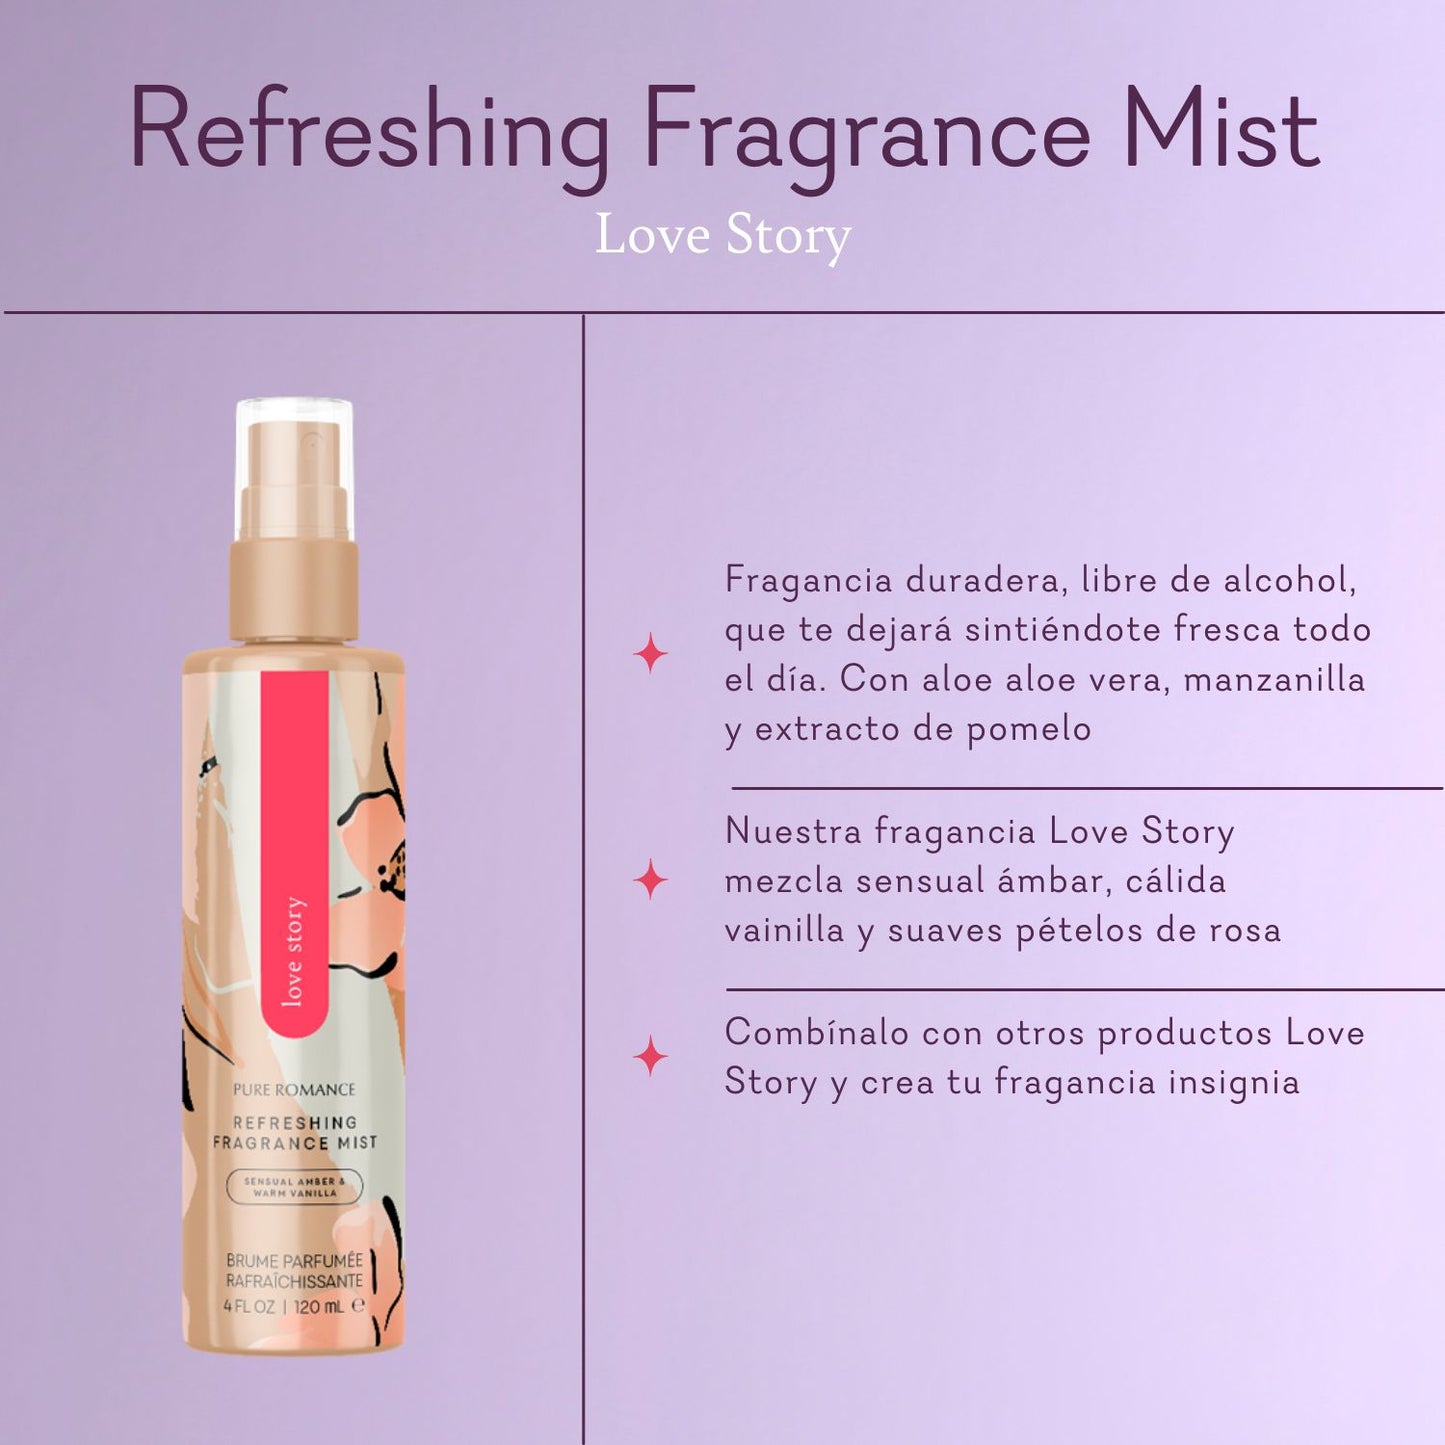 Refreshing Fragrance Mist - Love Story